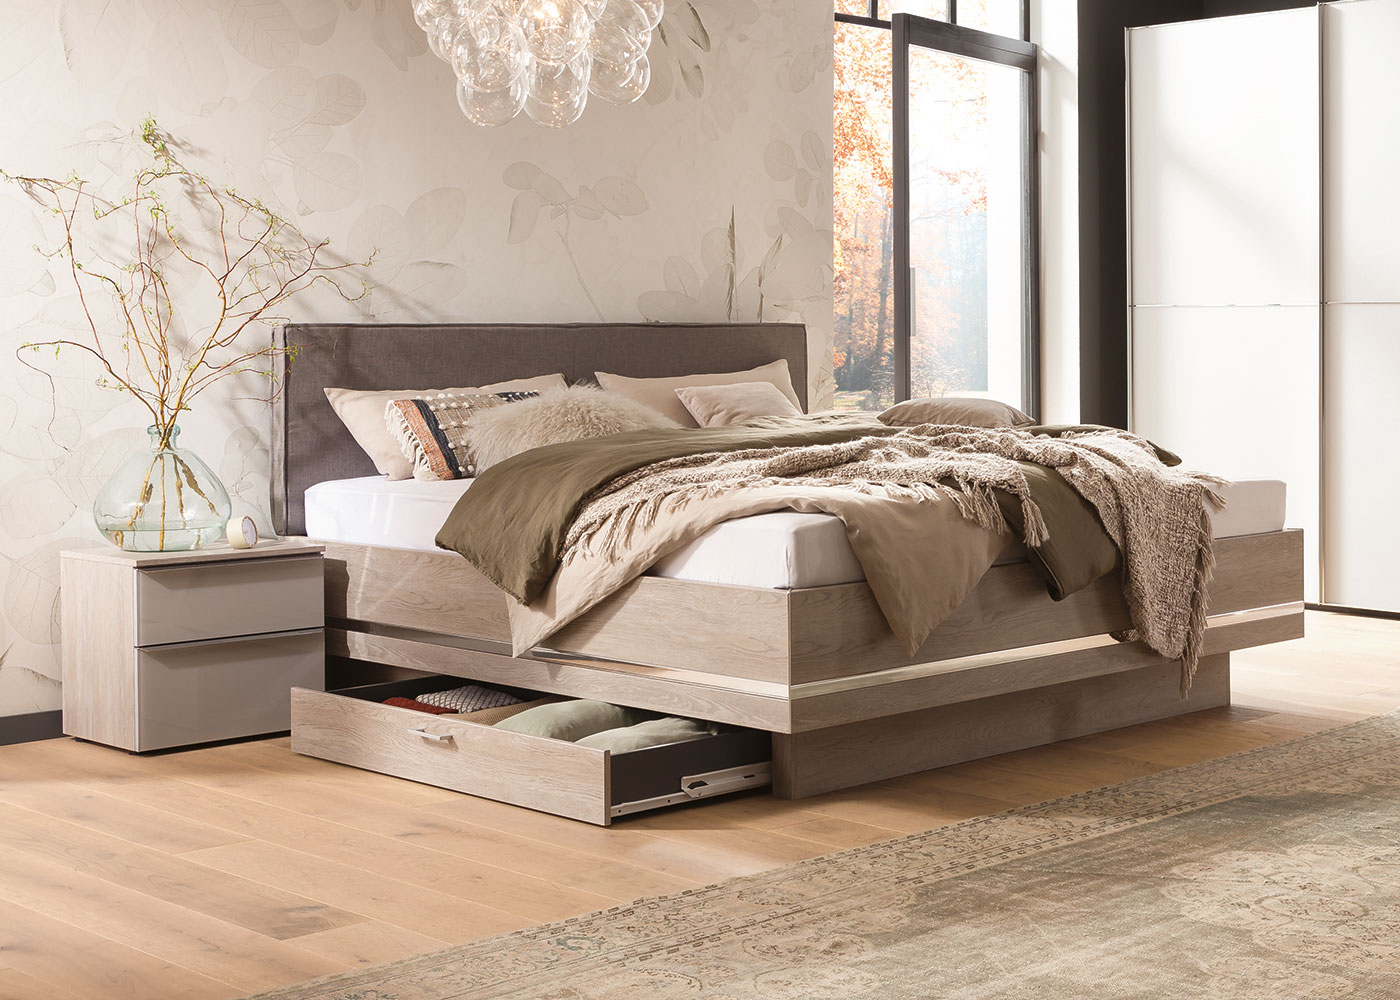 nolte bedroom furniture reviews